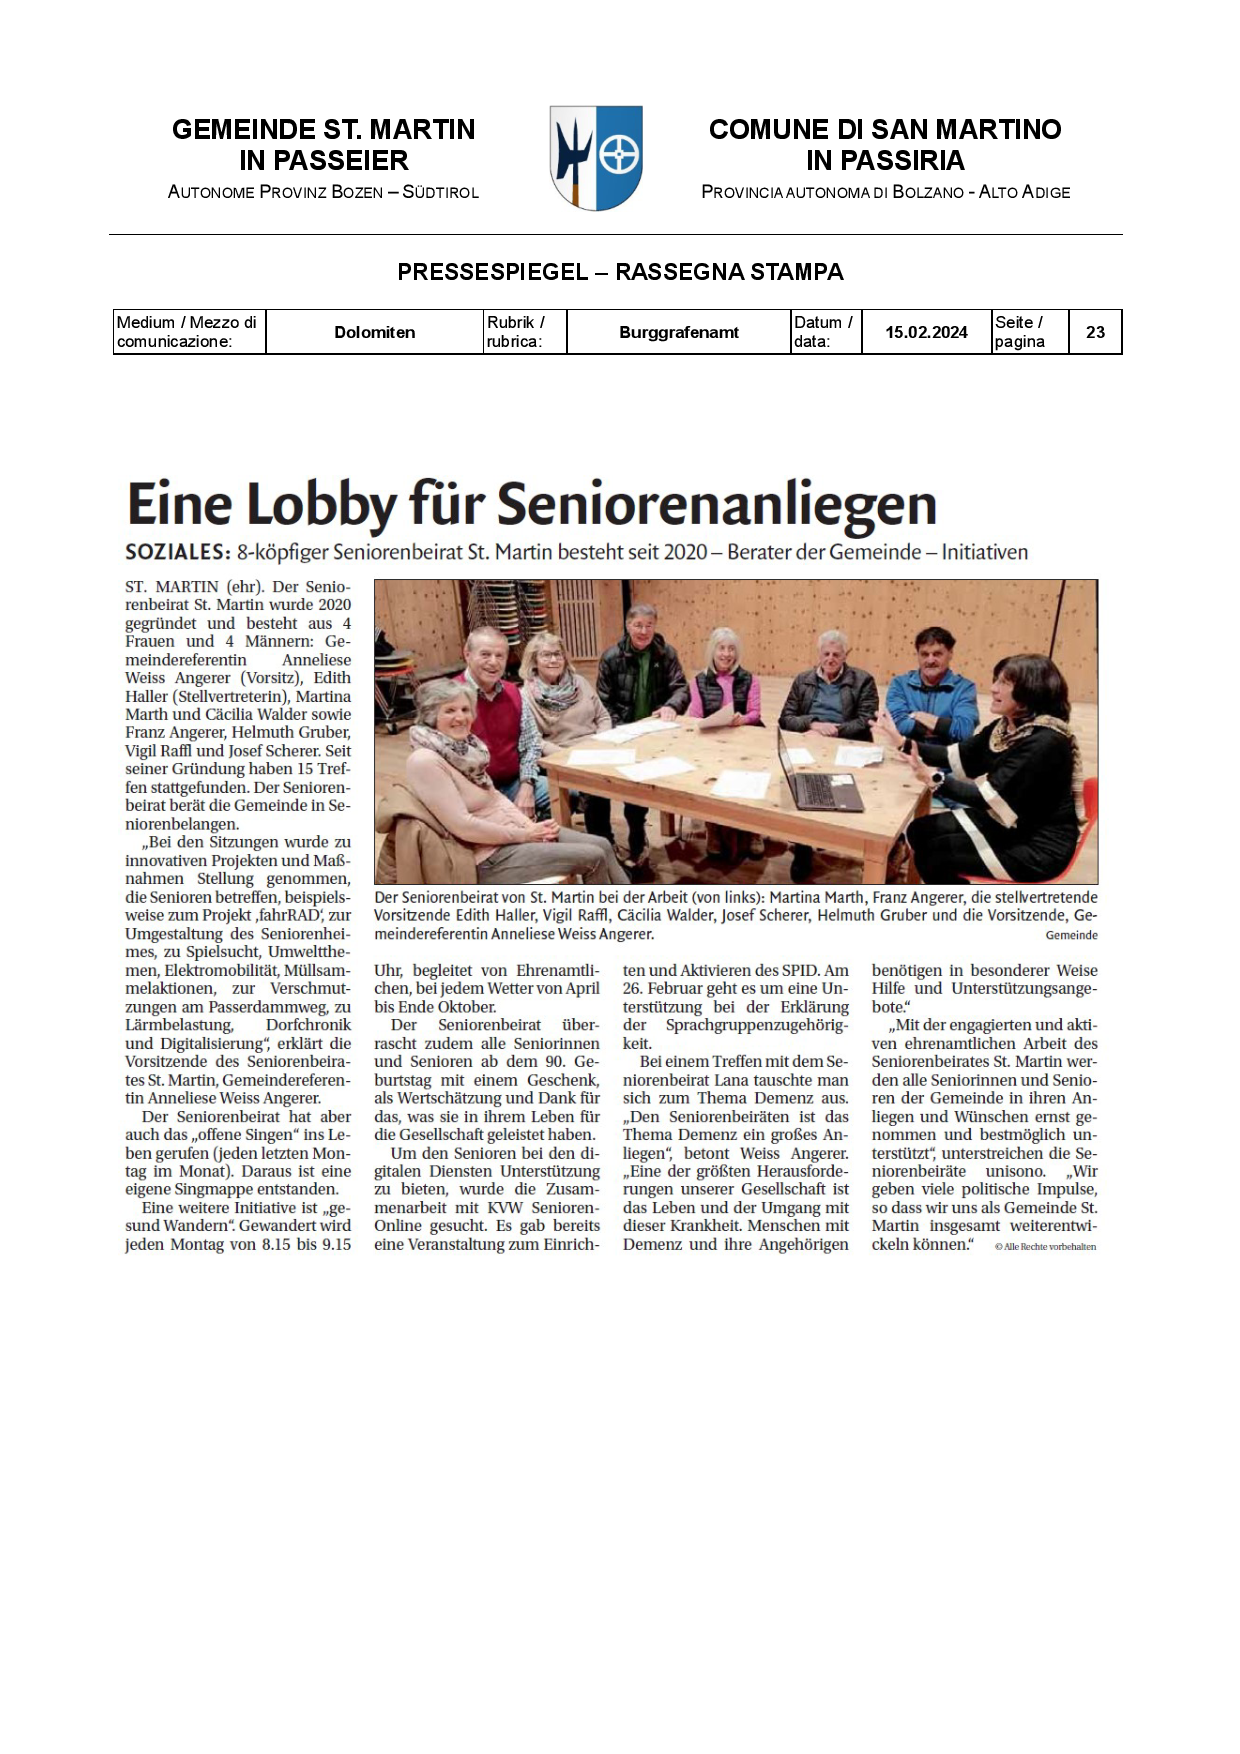 Dolomiten - Eine Lobby für Seniorenanliegen